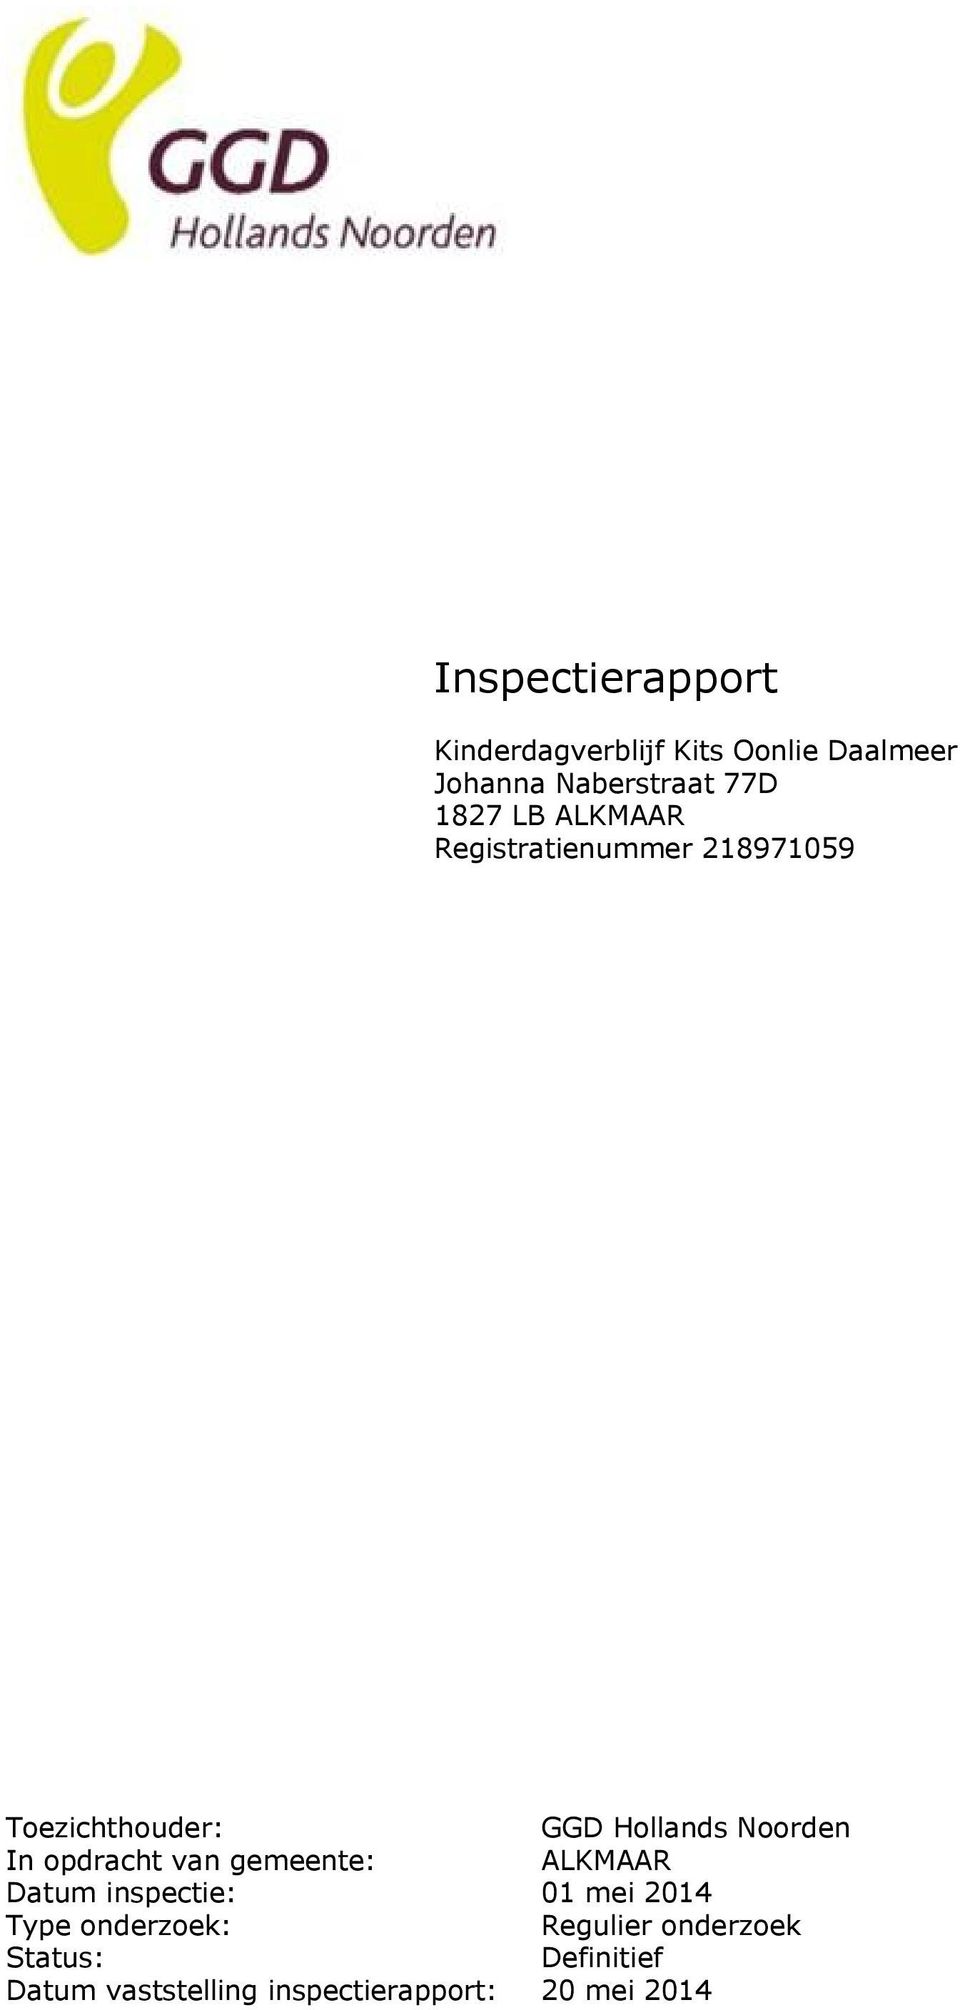 In opdracht van gemeente: ALKMAAR Datum inspectie: 01 mei 2014 Type onderzoek: